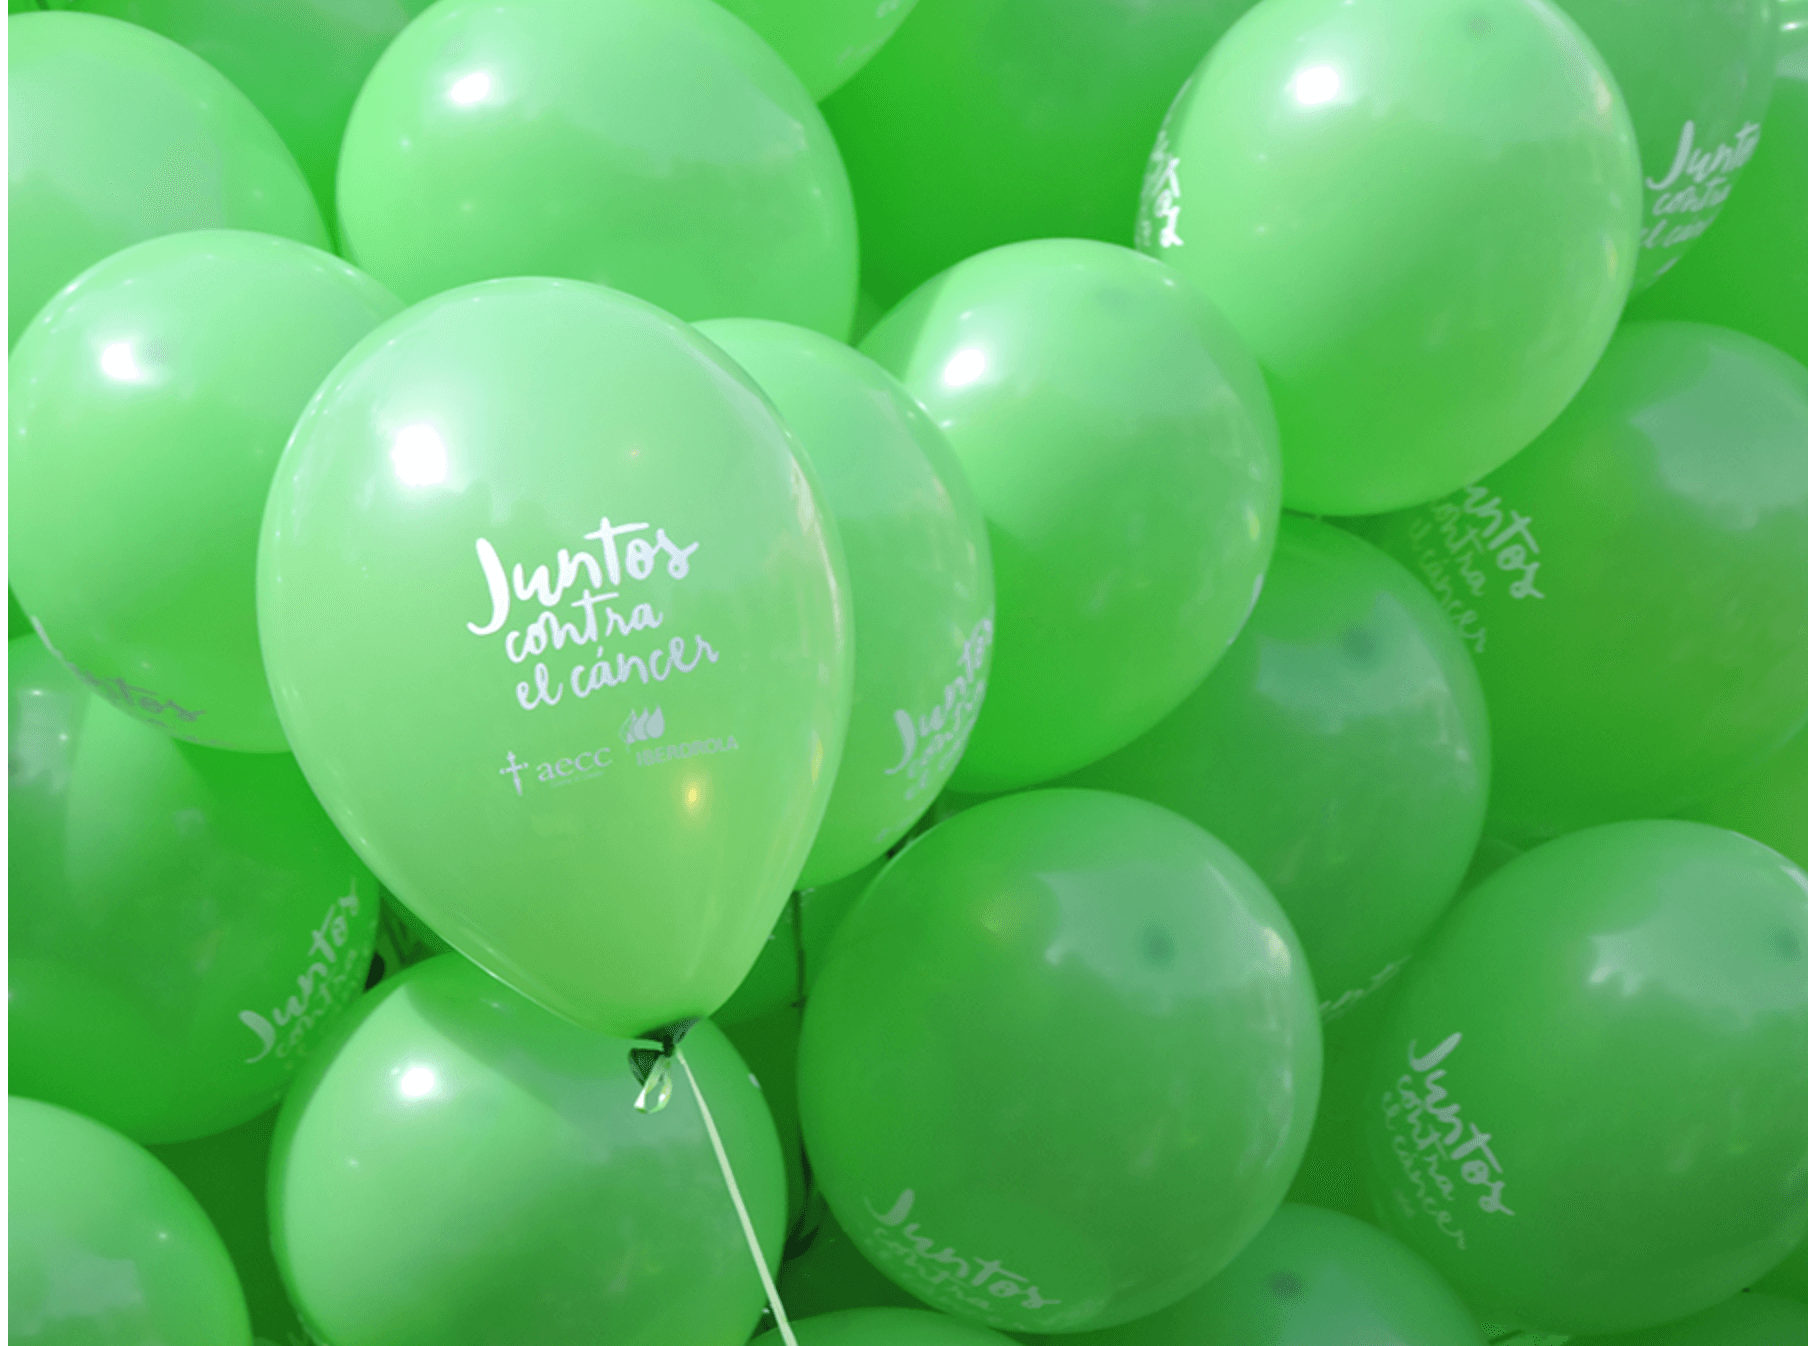 globos verdes de Juntos contra el cáncer